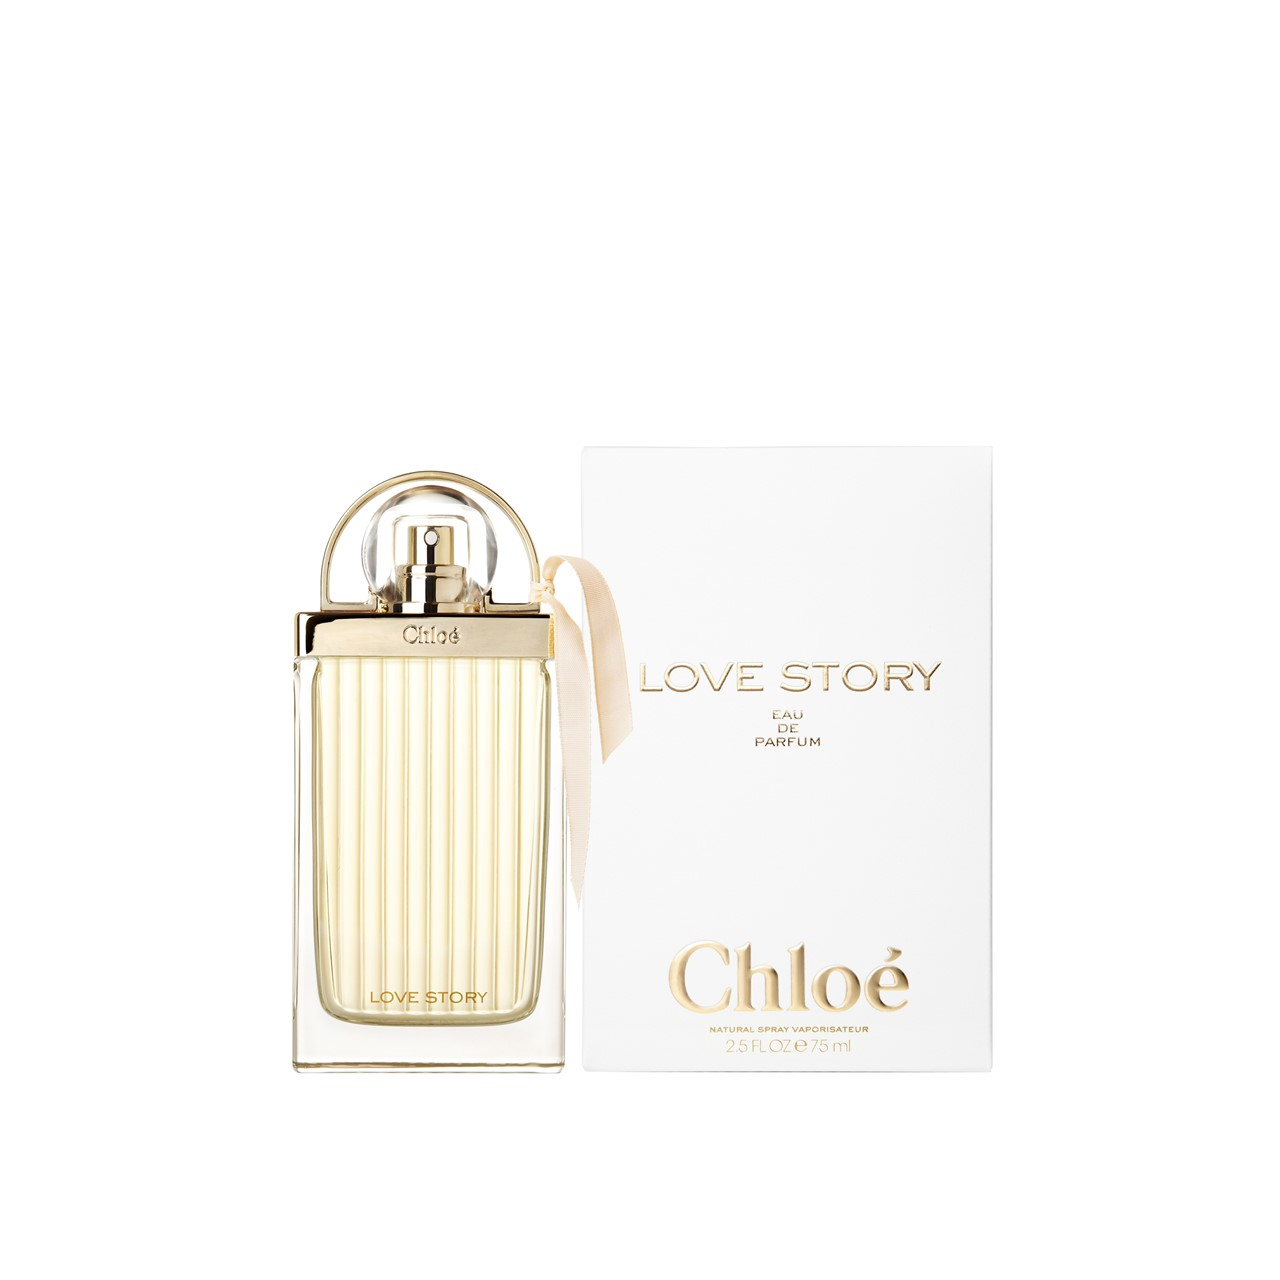 Chloé Love Story Eau de Parfum 75ml (2.5fl oz)